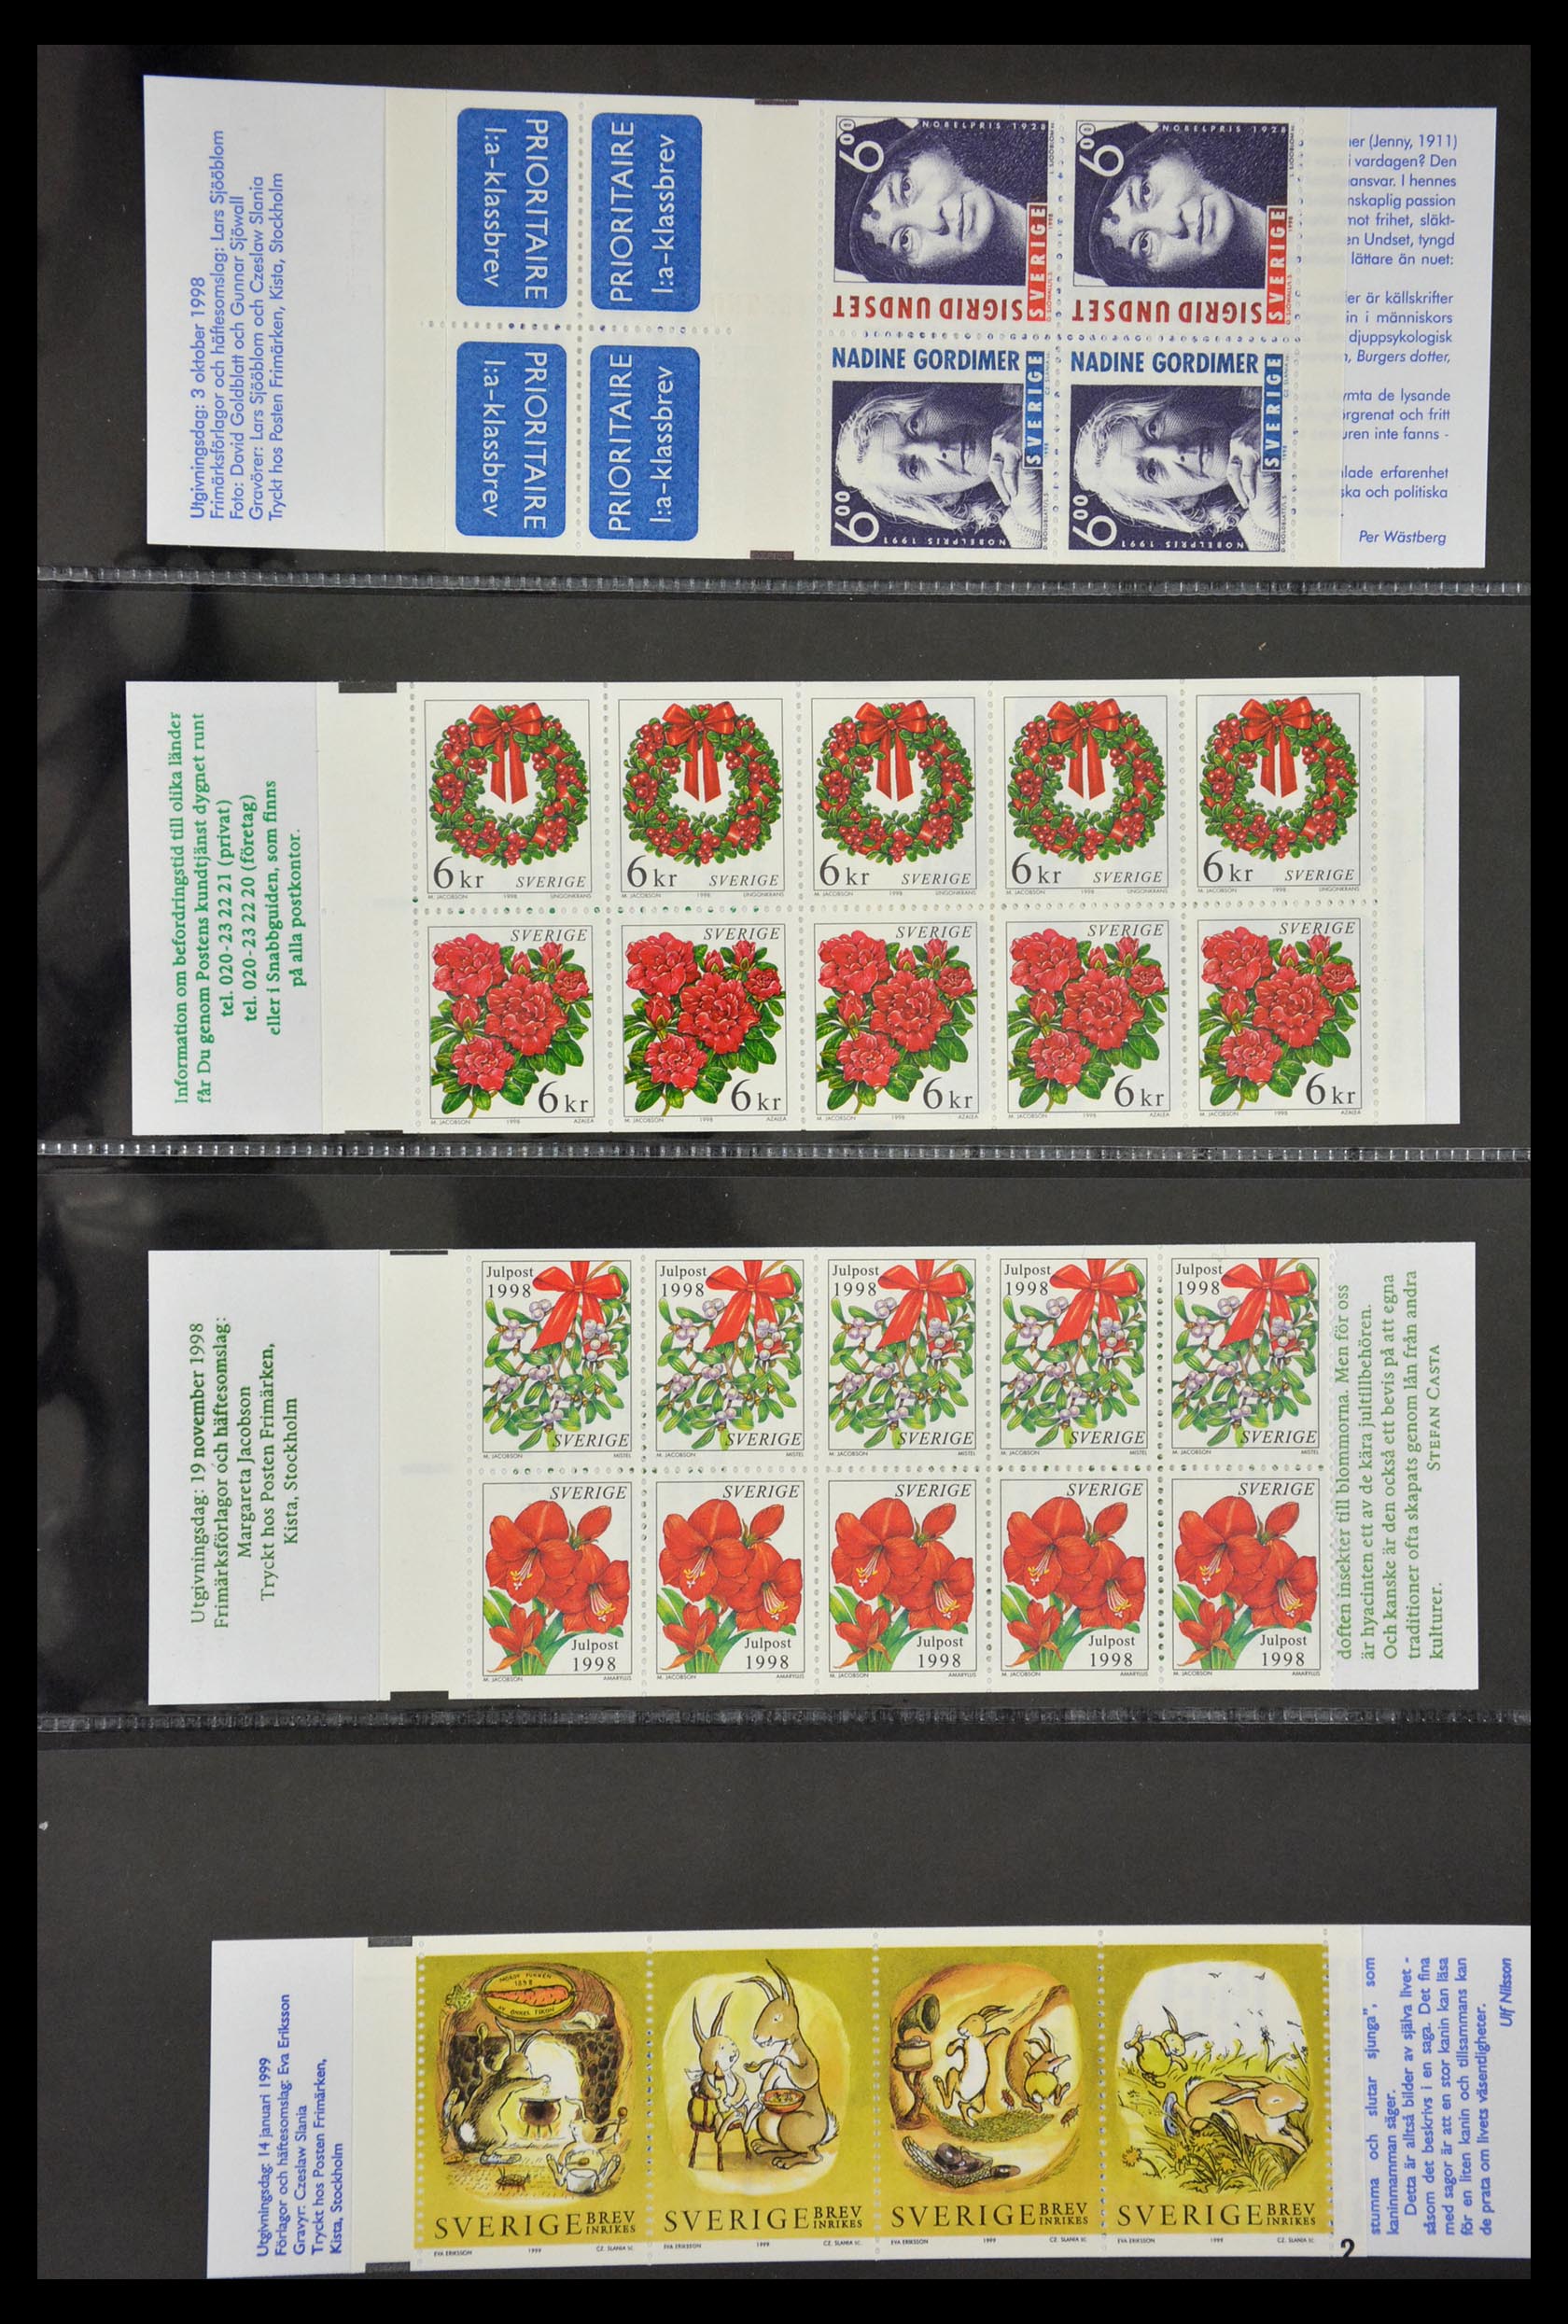 29368 121 - 29368 Sweden stamp booklets 1942-1996.